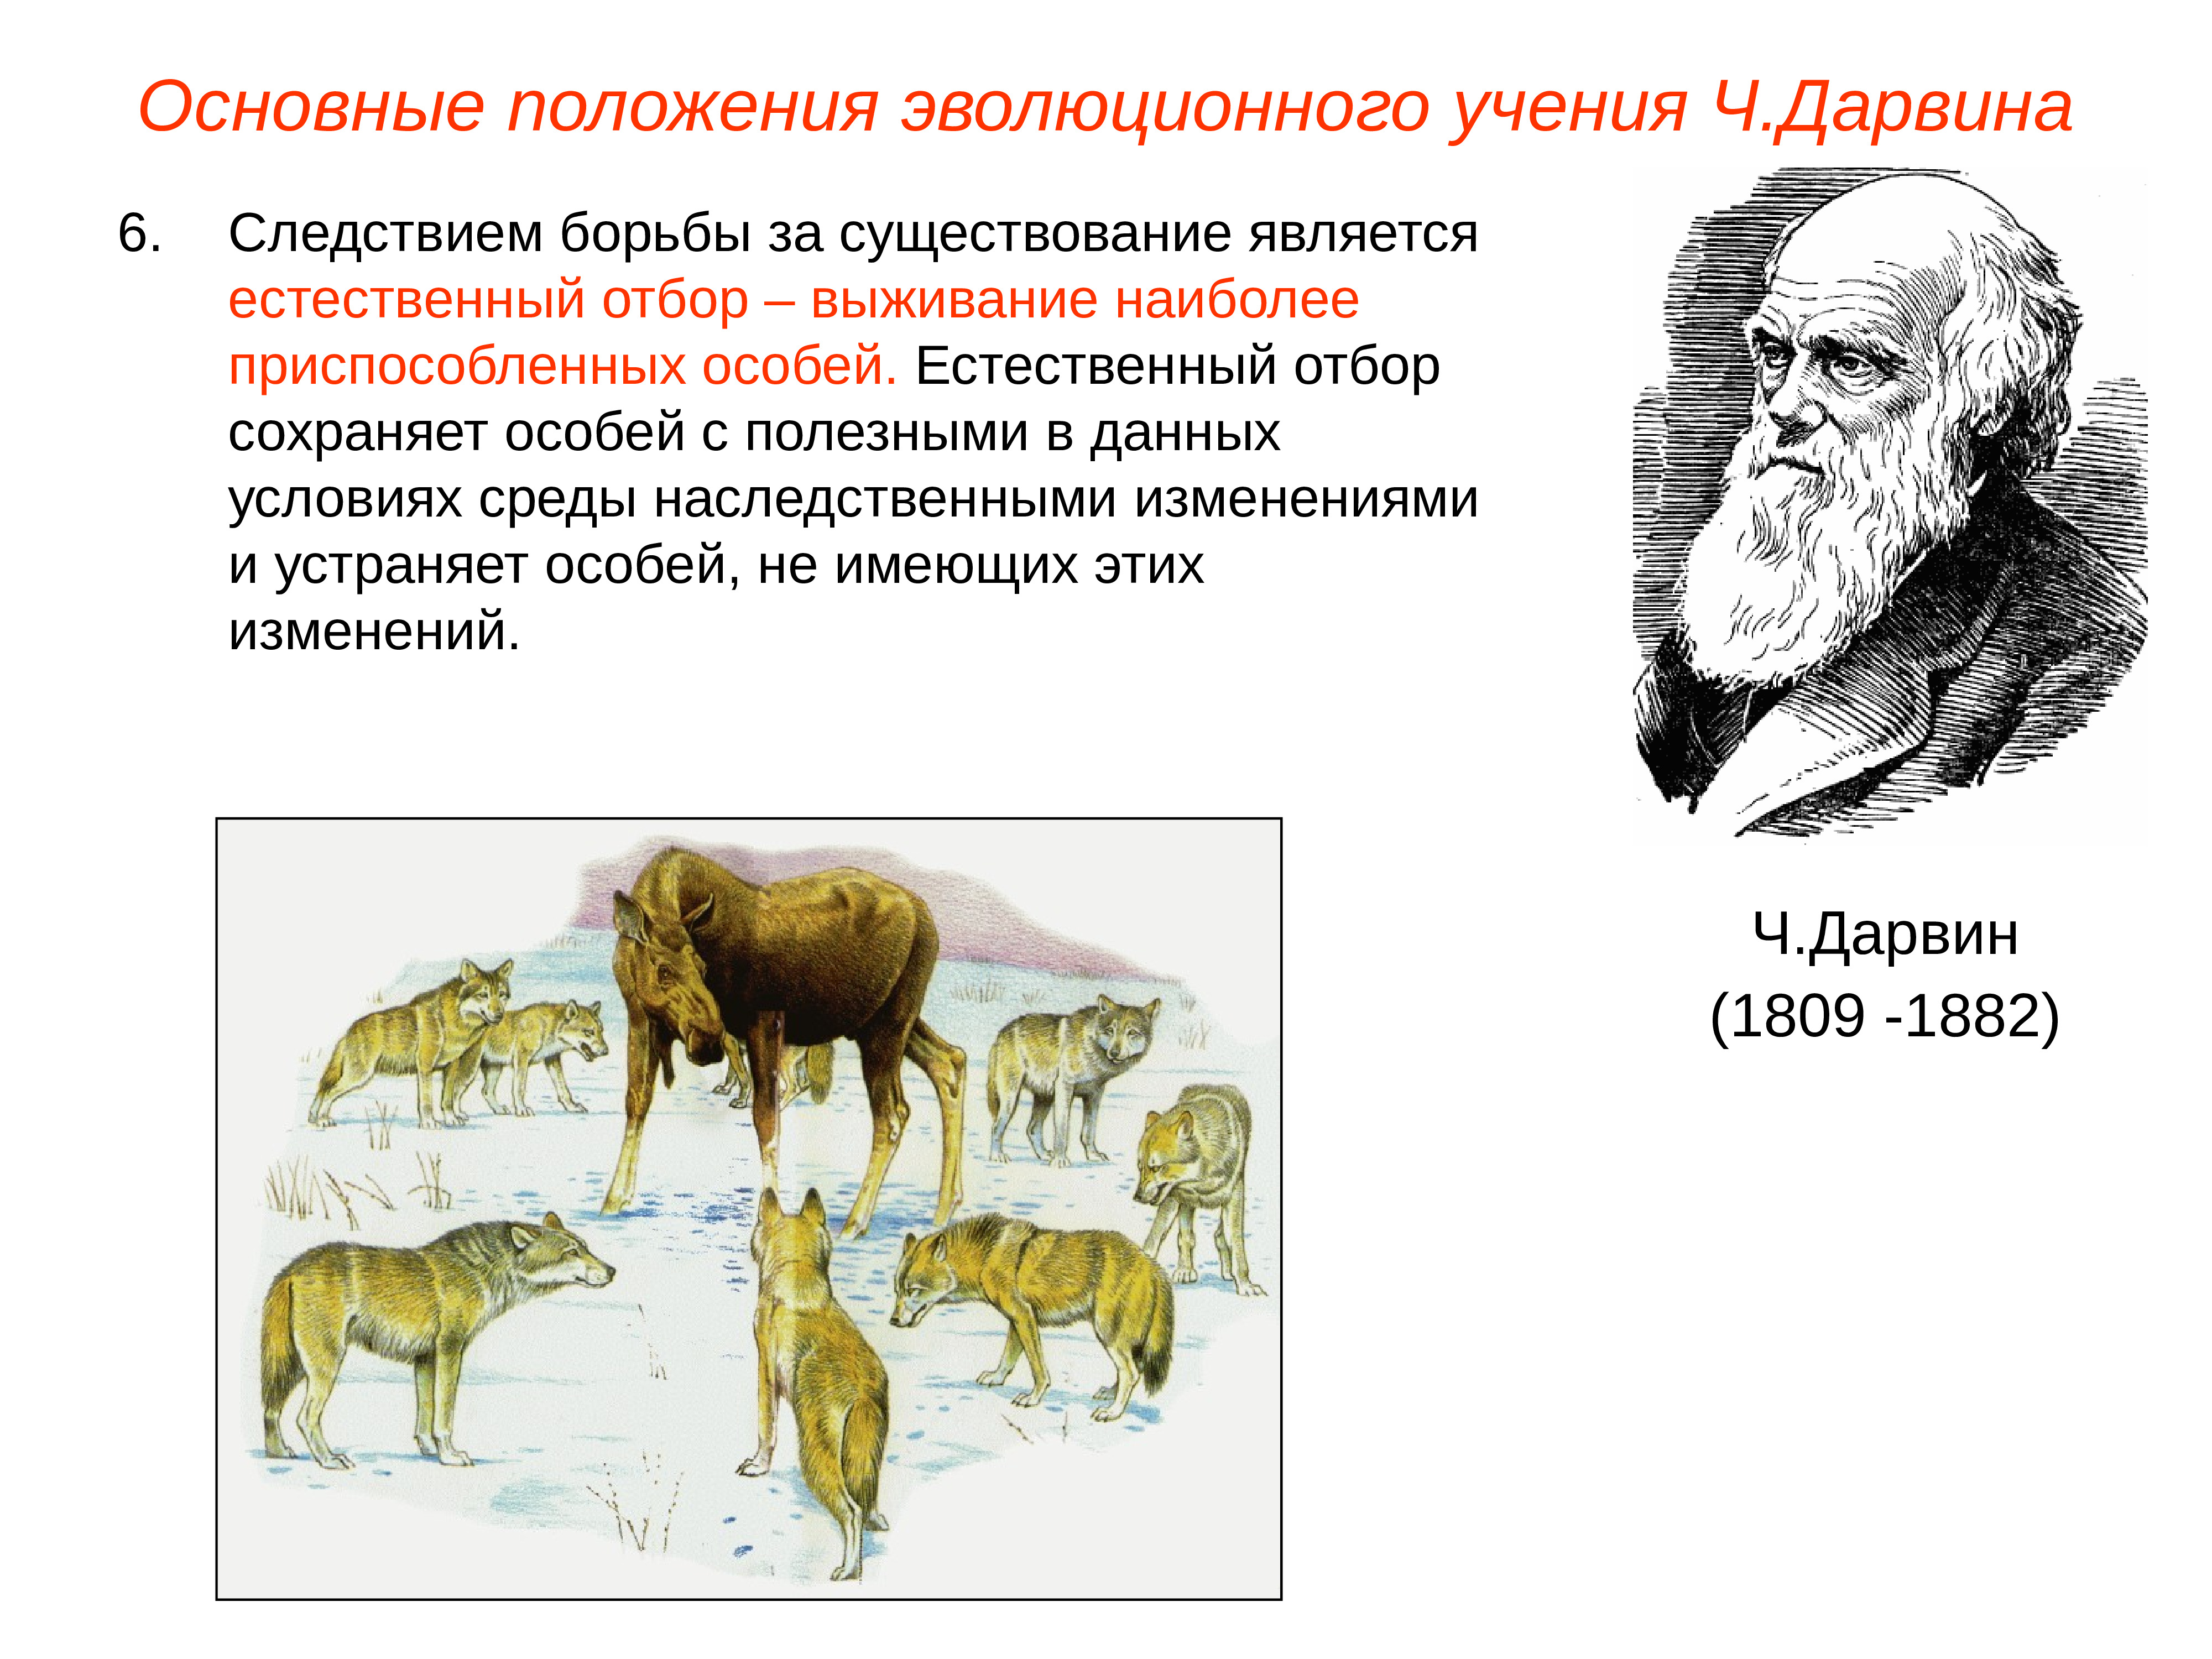 В постоянных условиях среды естественный отбор сохраняет. Теория естественного отбора Дарвина. Дарвинская концепция естественного отбора. Доказательства эволюции ч. Дарвина. Естественный отбор эволюции Дарвина.